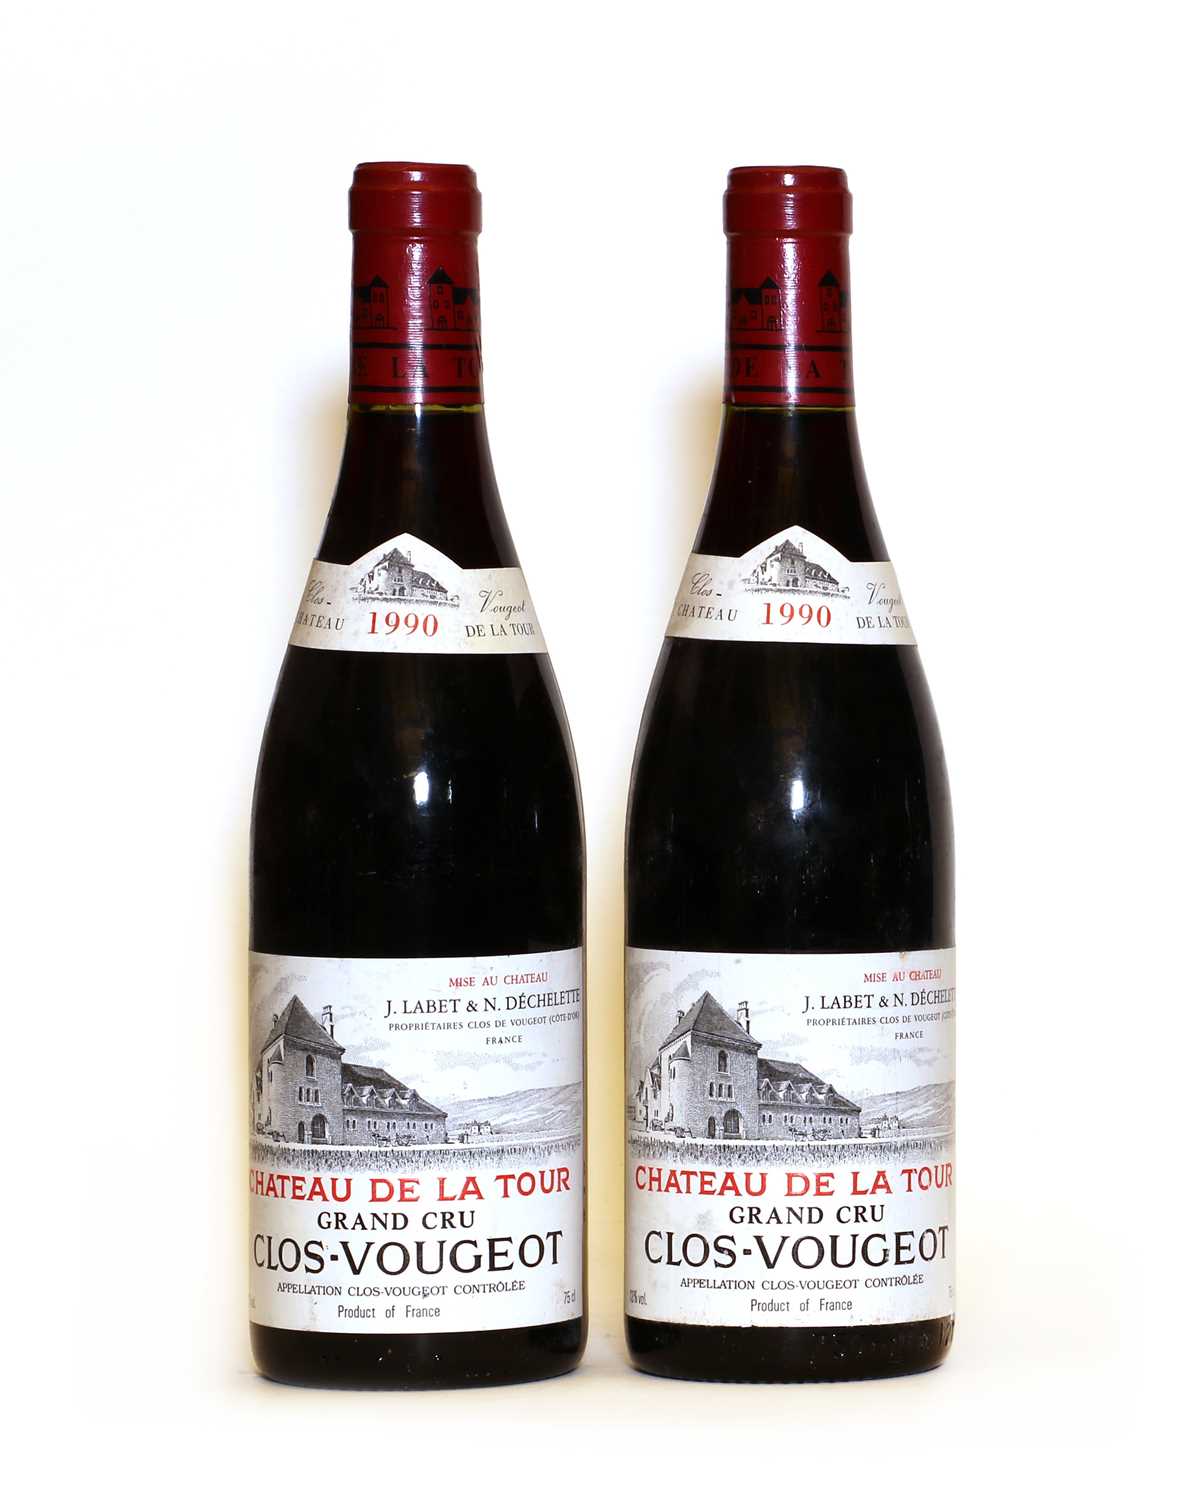 Lot 62 - Clos-Vougeot, Grand Cru, Chateau de la Tour, 1990, two bottles